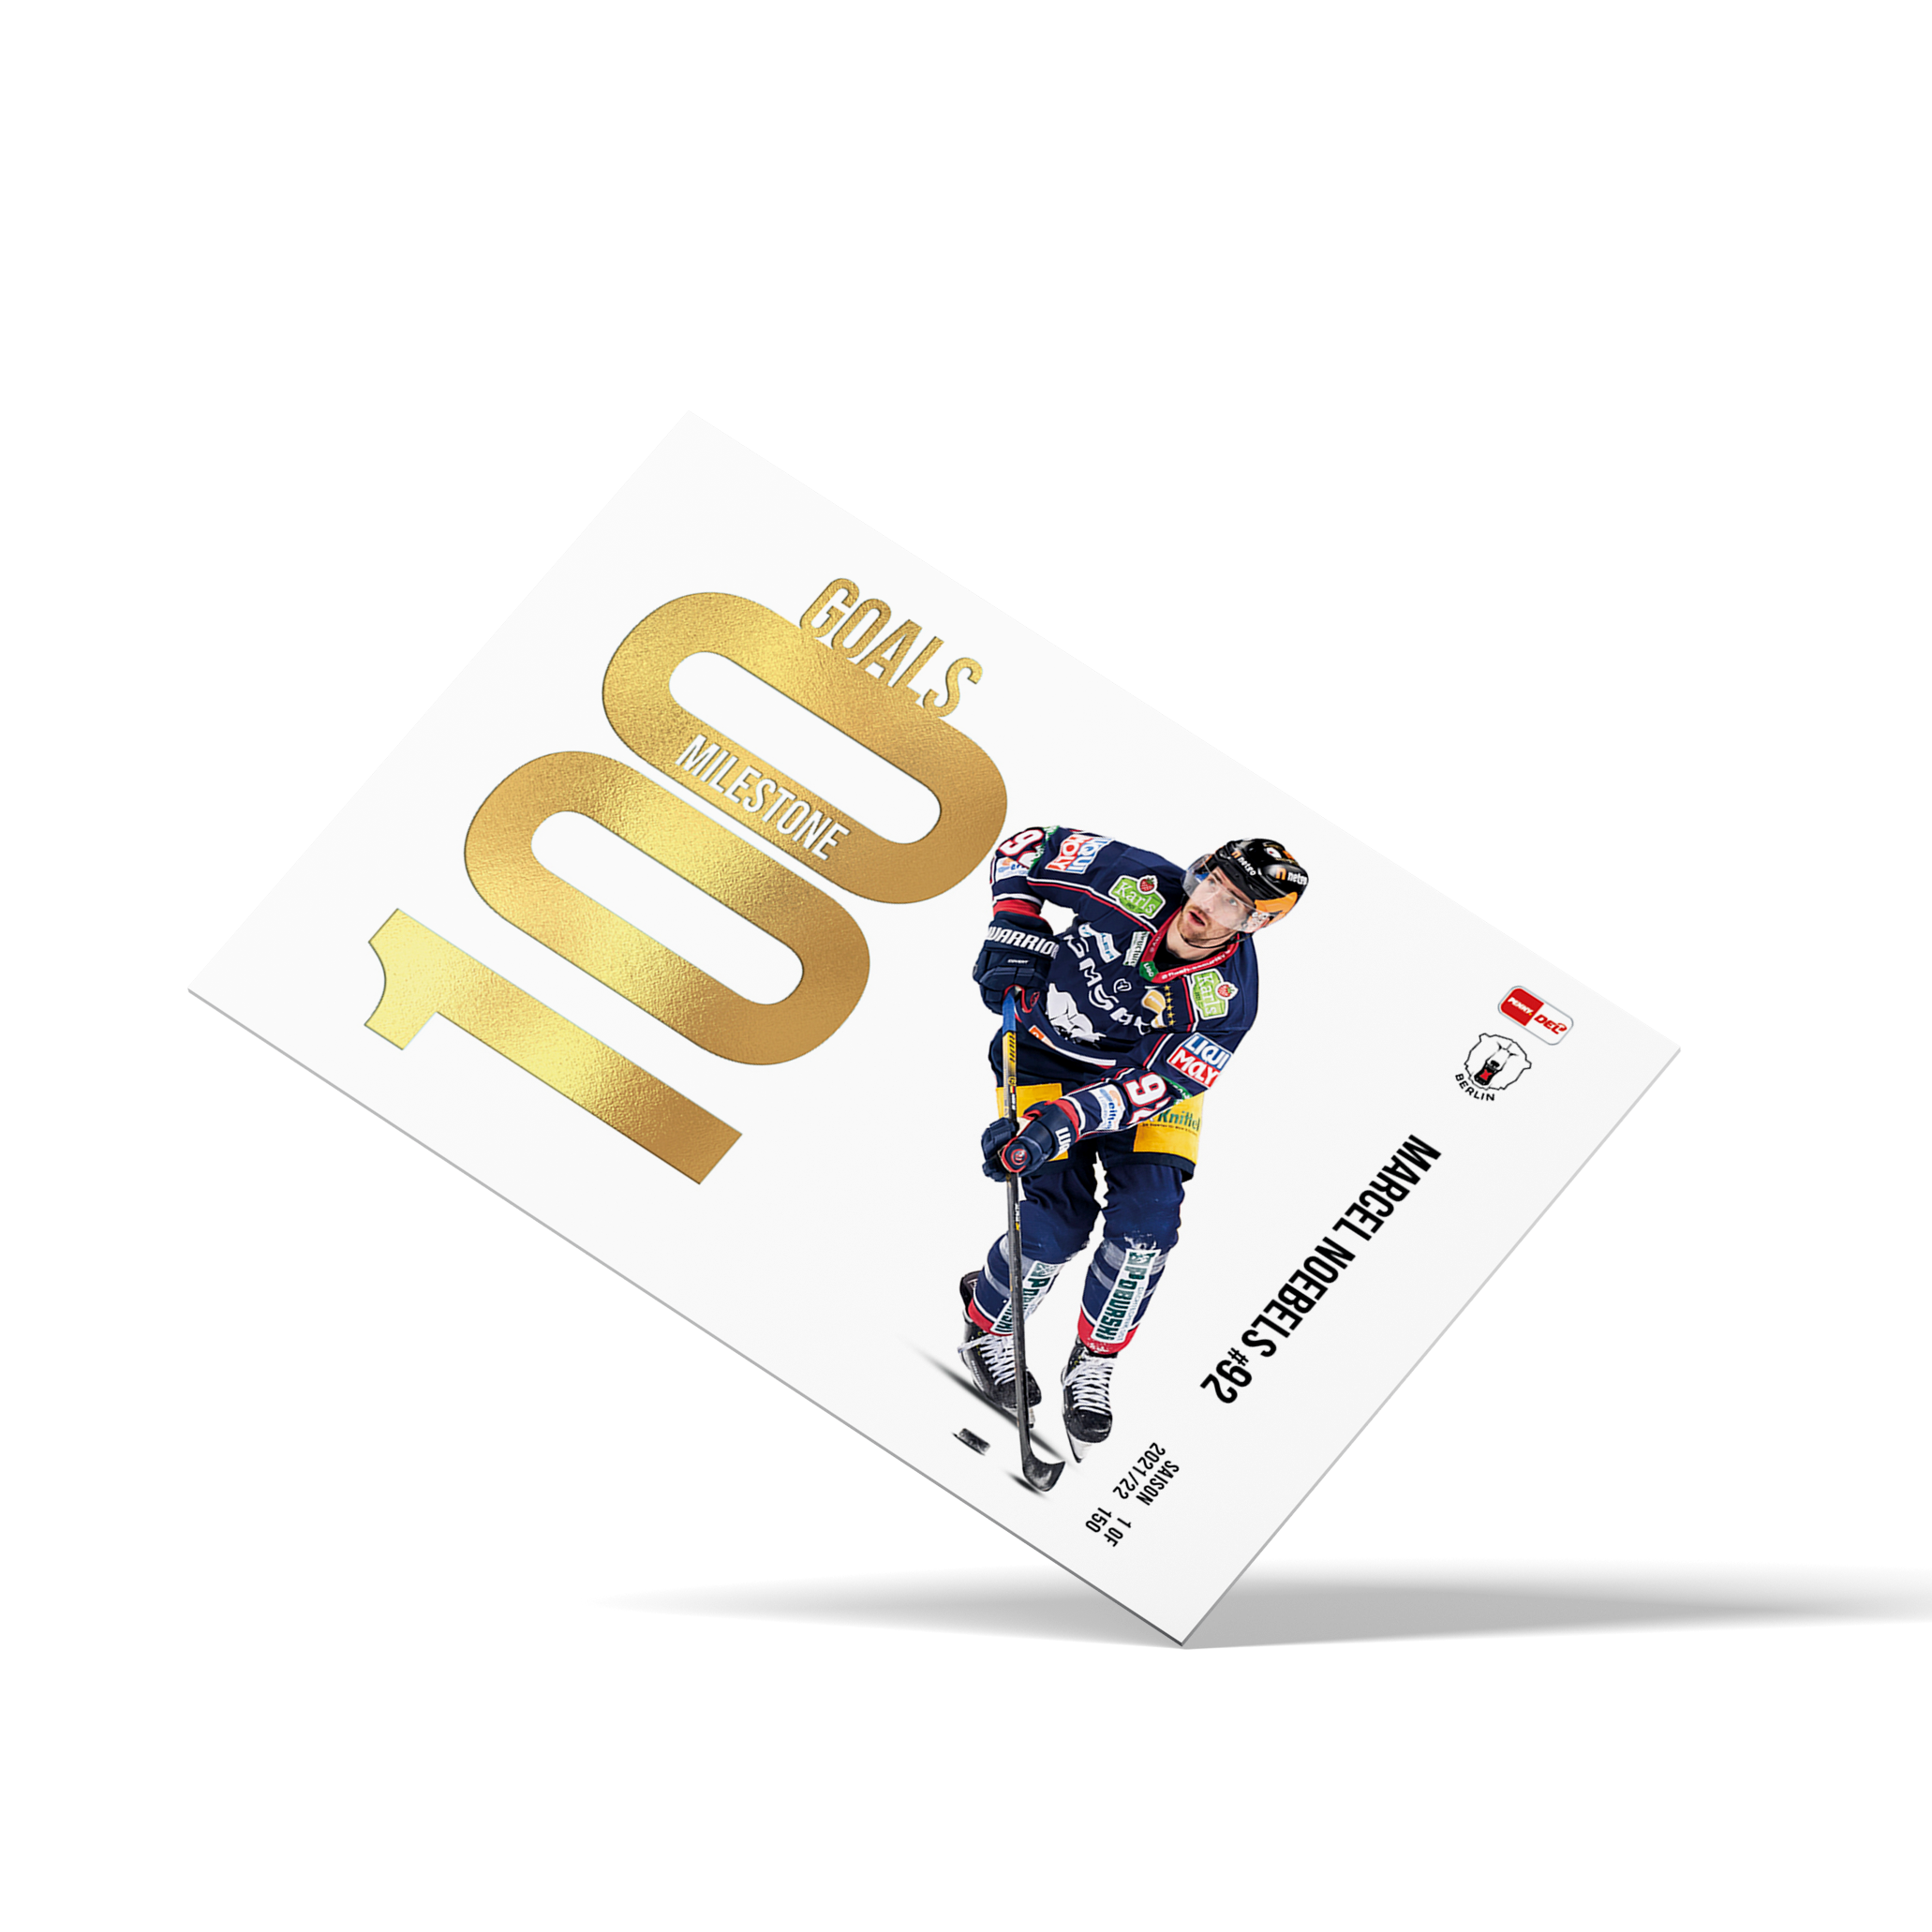 MILESTONE - 100 Goals - Marcel Noebels